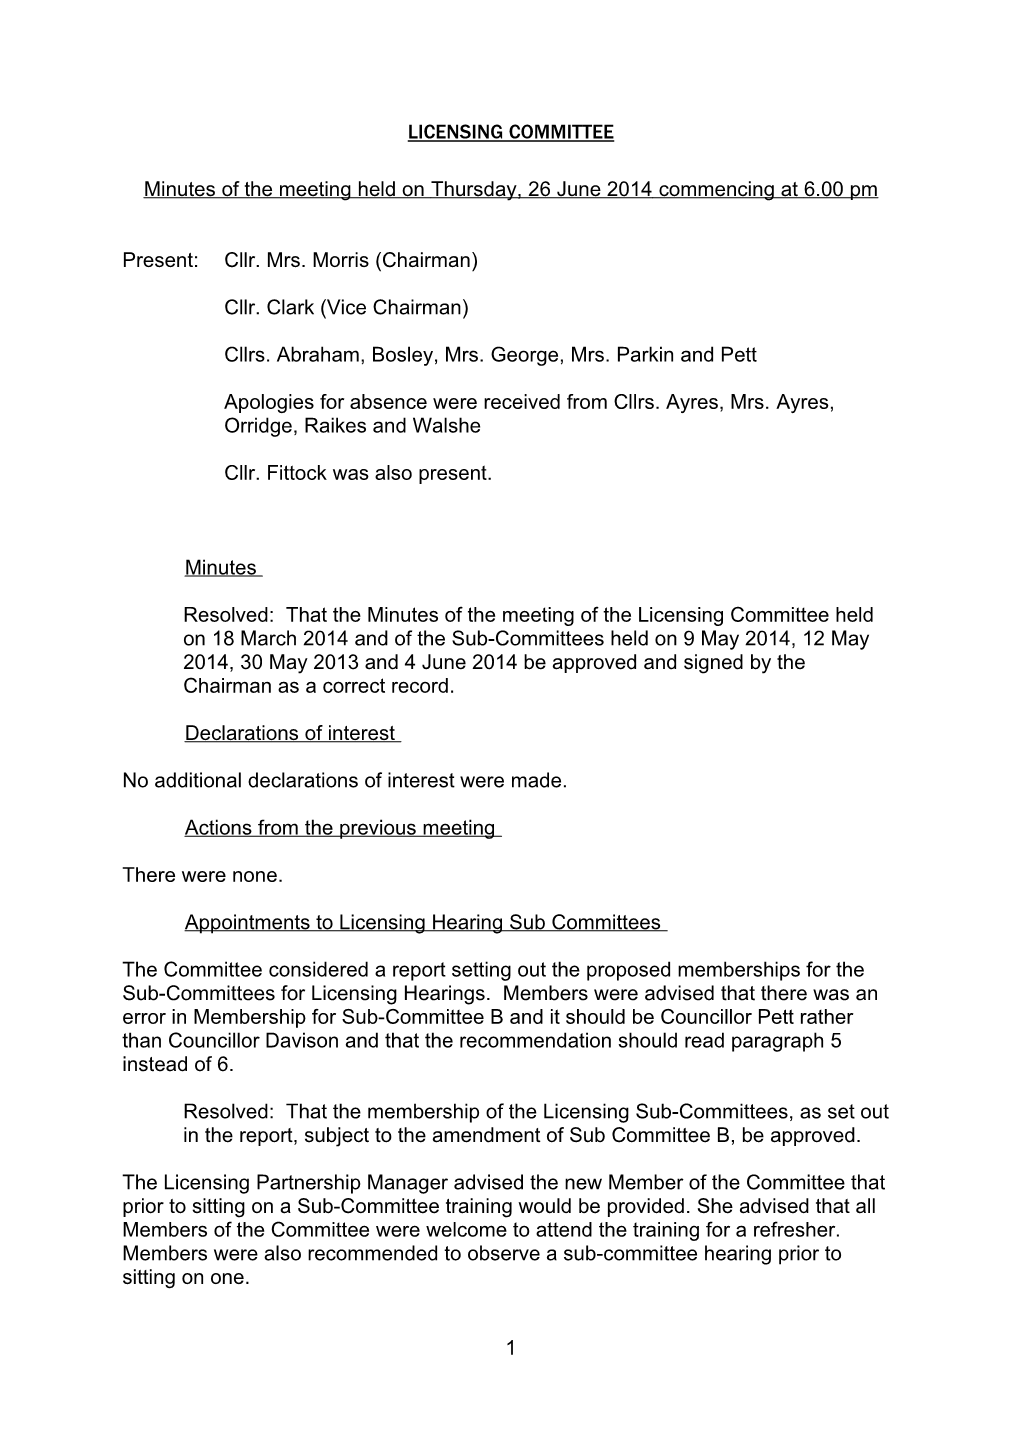 Licensing Committee - Thursday, 26 June 2014